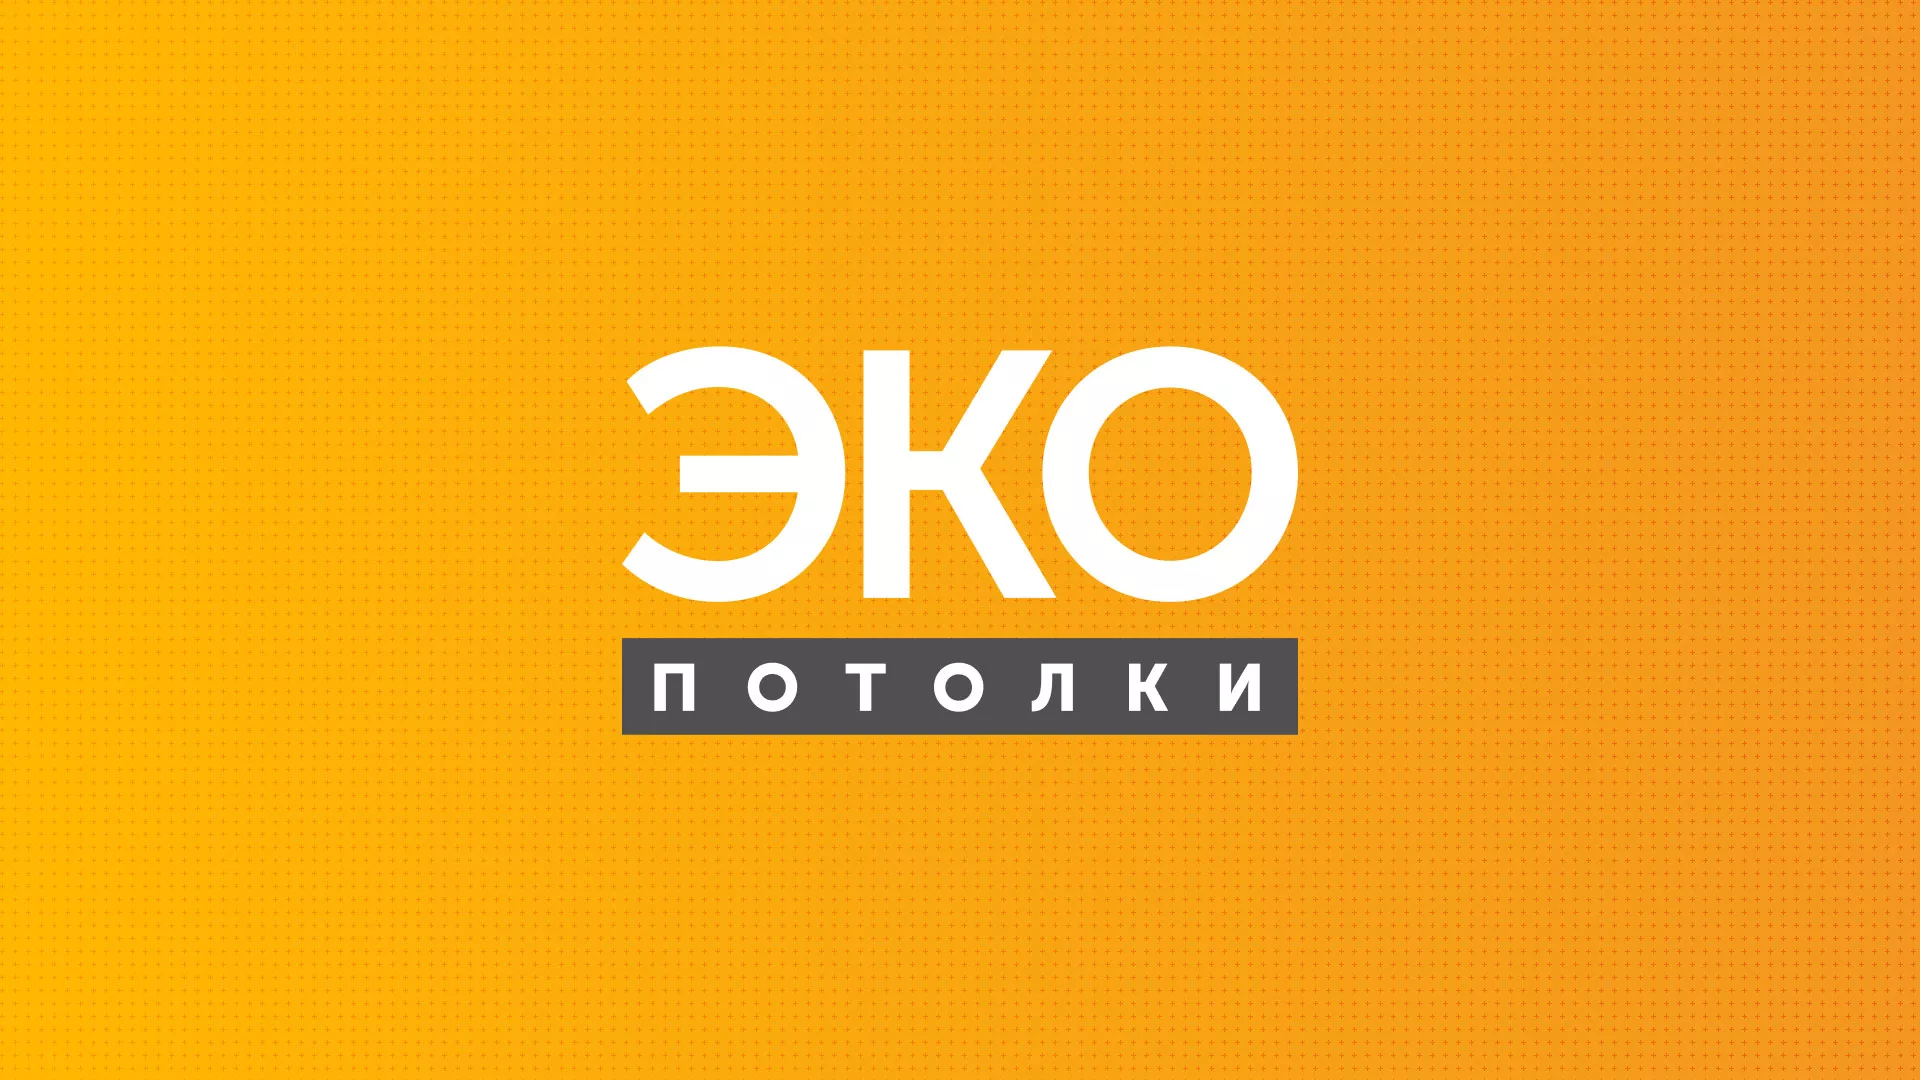 Разработка сайта по натяжным потолкам «Эко Потолки» в Грозном